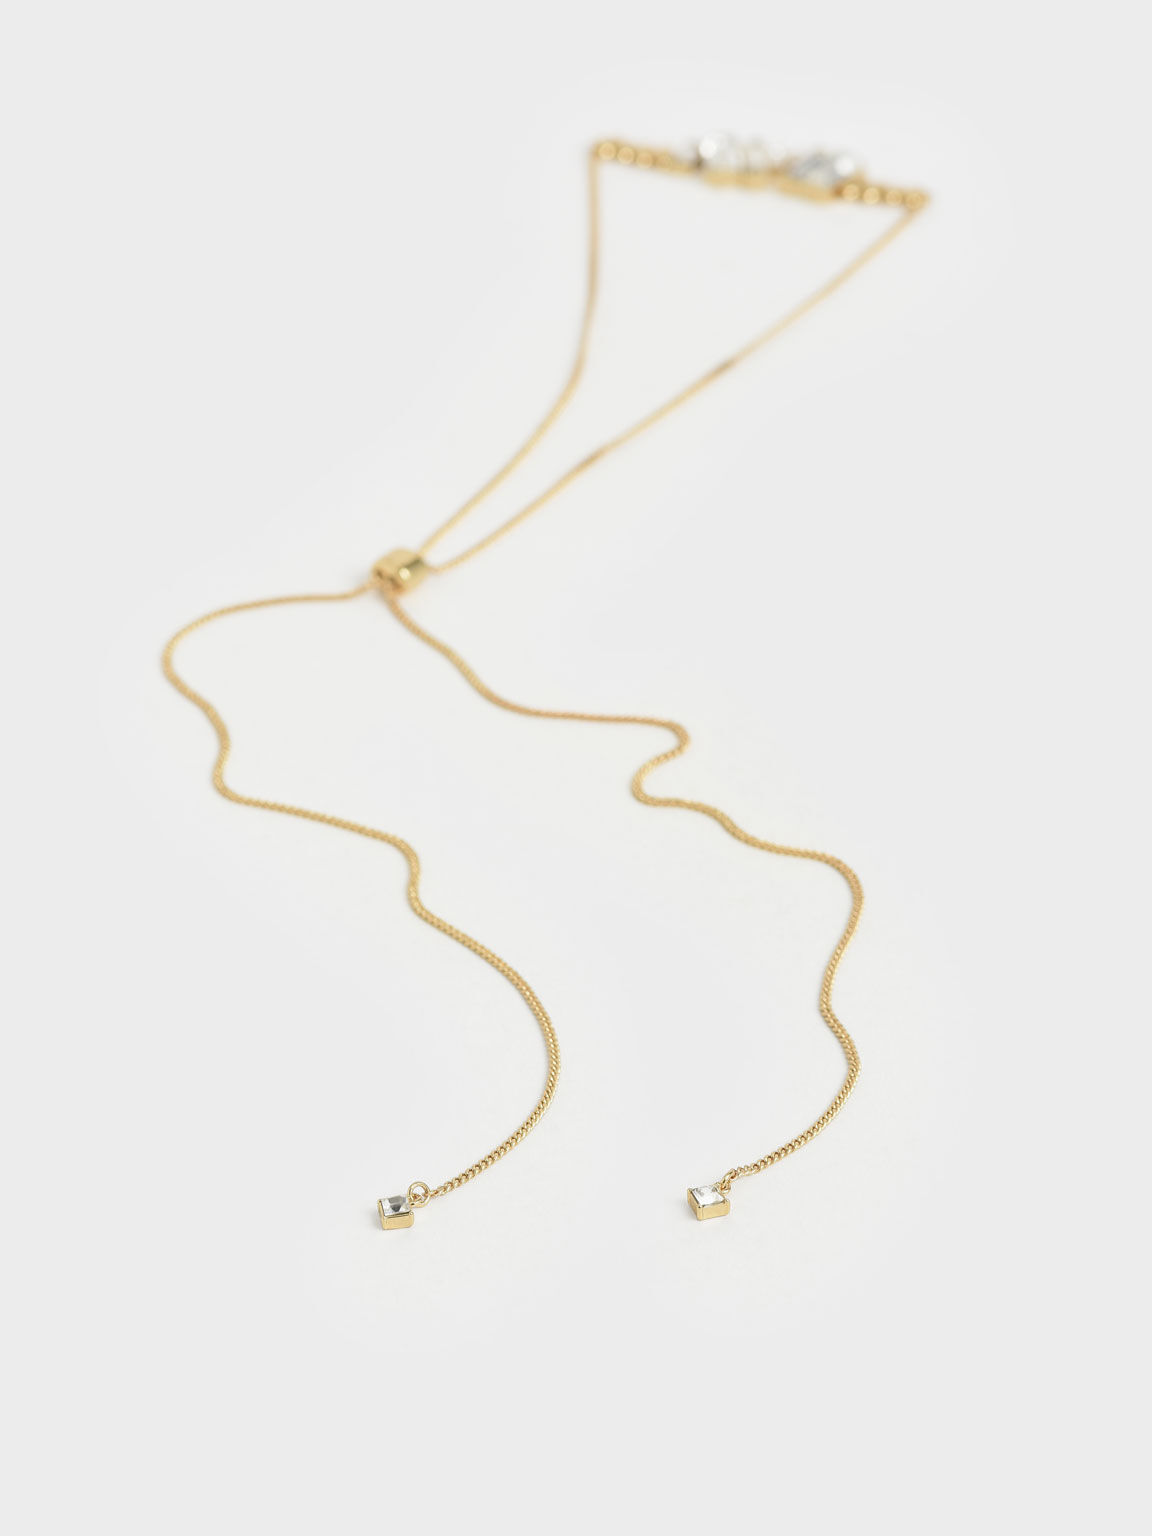 Swarovski® Crystal Embellished Matinee Necklace, Gold, hi-res